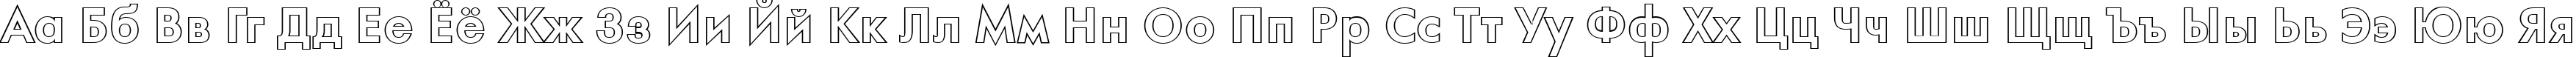 Пример написания русского алфавита шрифтом a_FuturaOrtoOtl Bold